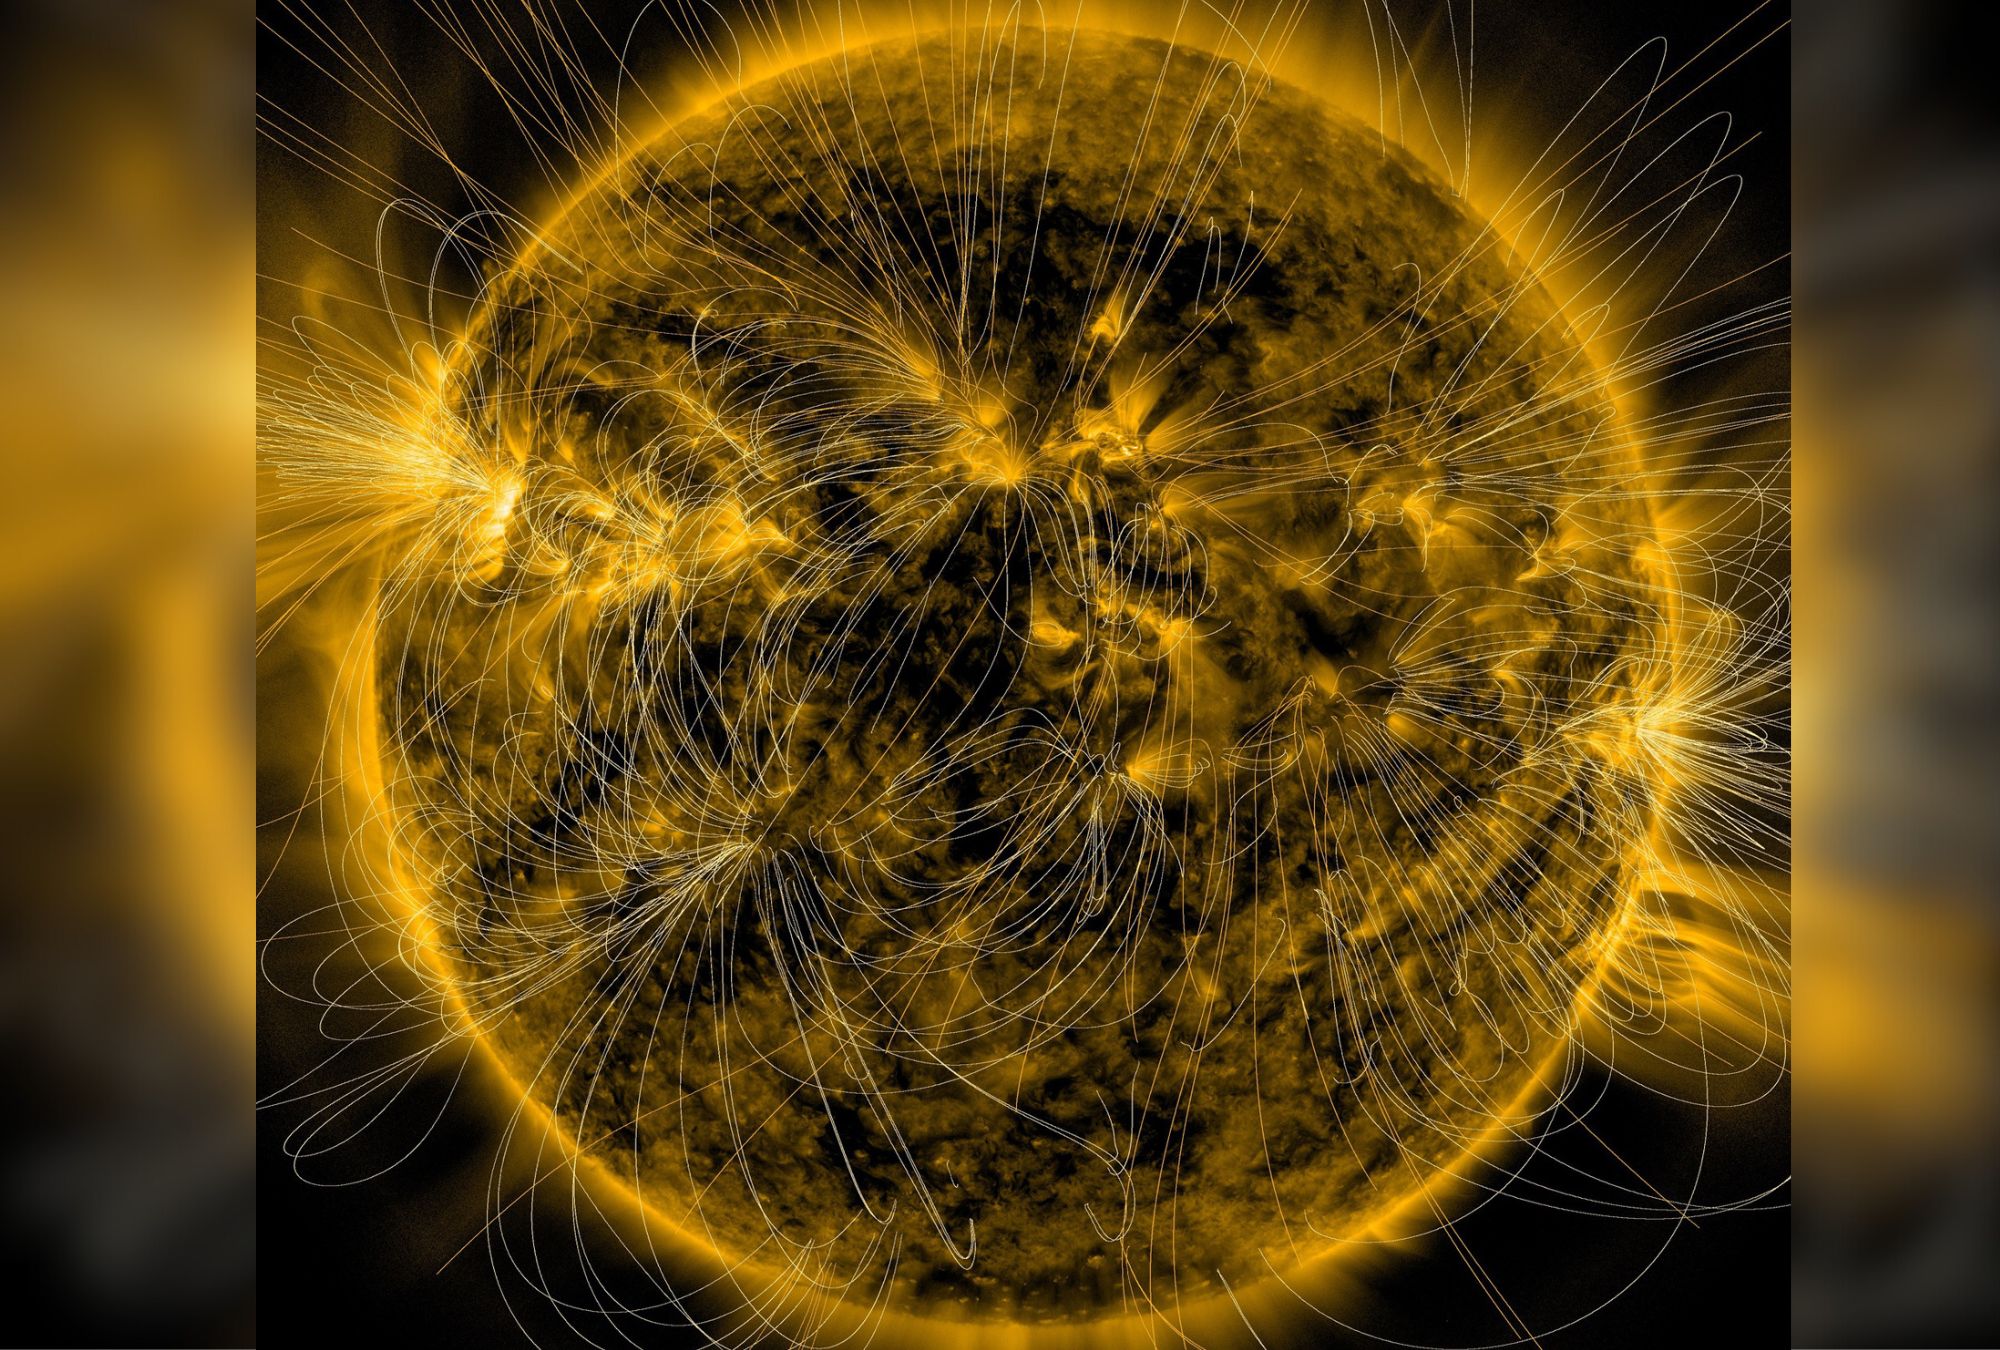 Aperçu de la tempête solaire alors qu’une nouvelle lumière brillait sur un mystère vieux de 400 ans